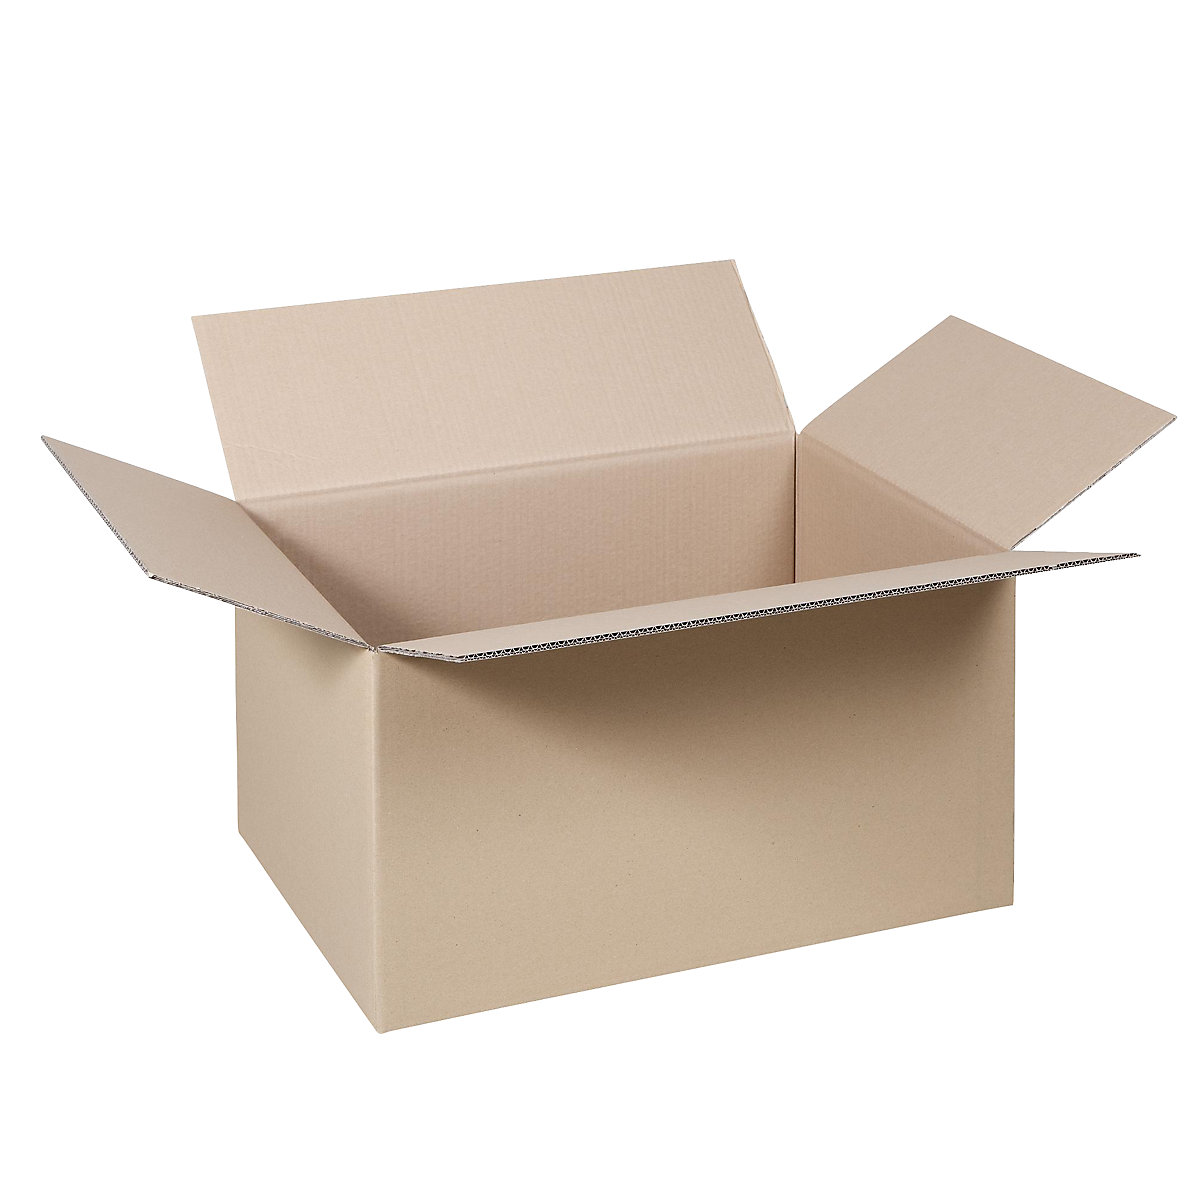 Cutie de carton pliantă, FEFCO 0201, cu 2 straturi de carton ondulat, dimensiuni interioare 484 x 384 x 368 mm, amb. 100 buc.-18